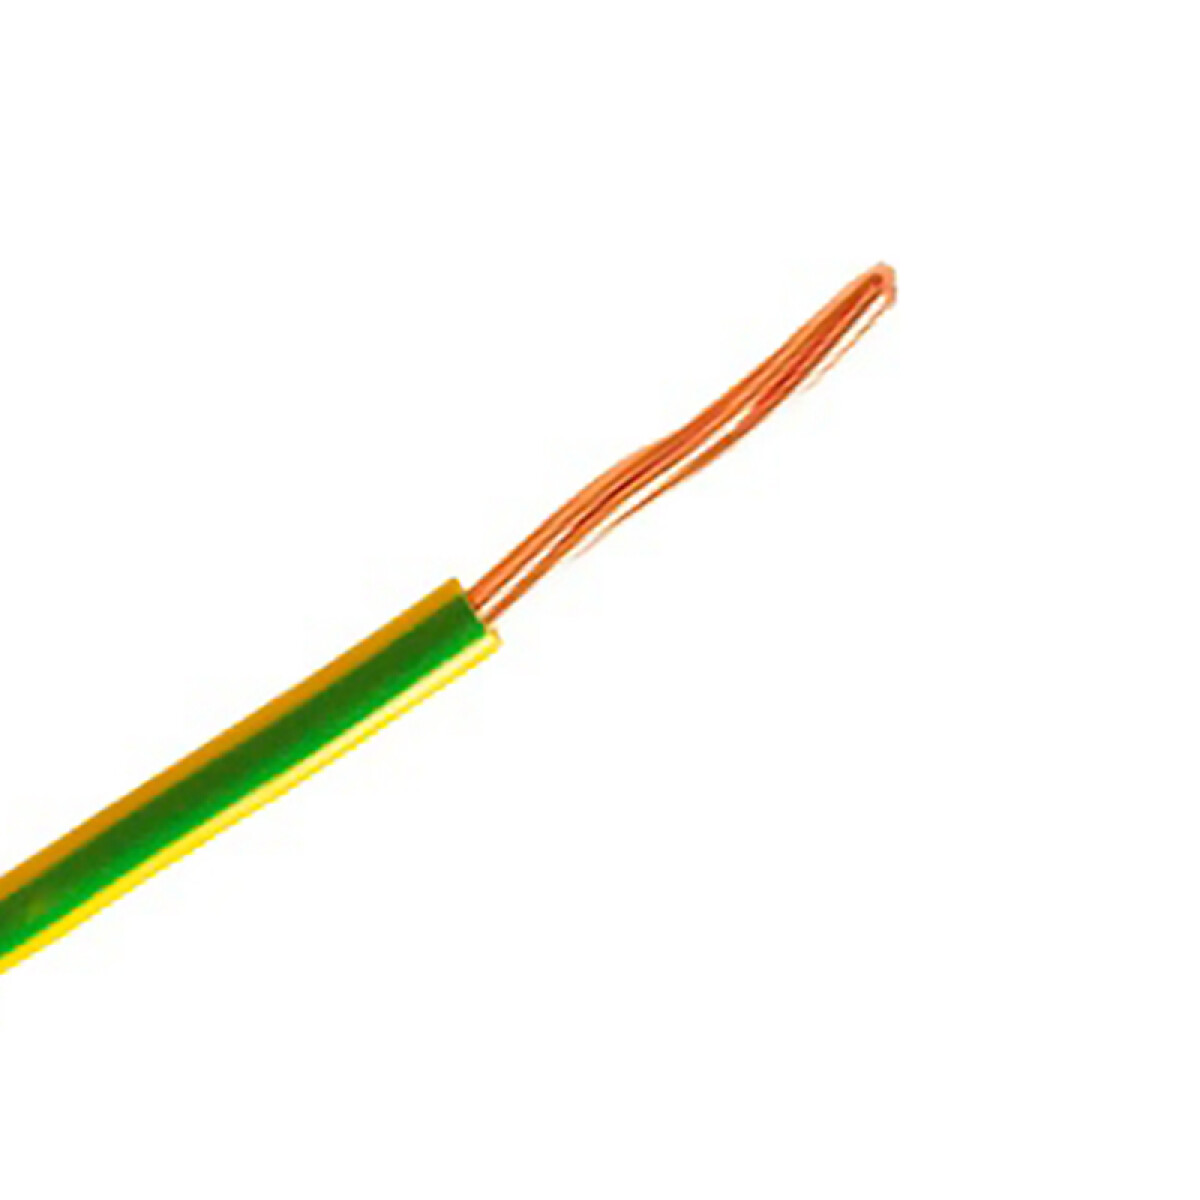 Cable de cobre flexible 10 mm² am/ver -Rollo 100mt - N03060 